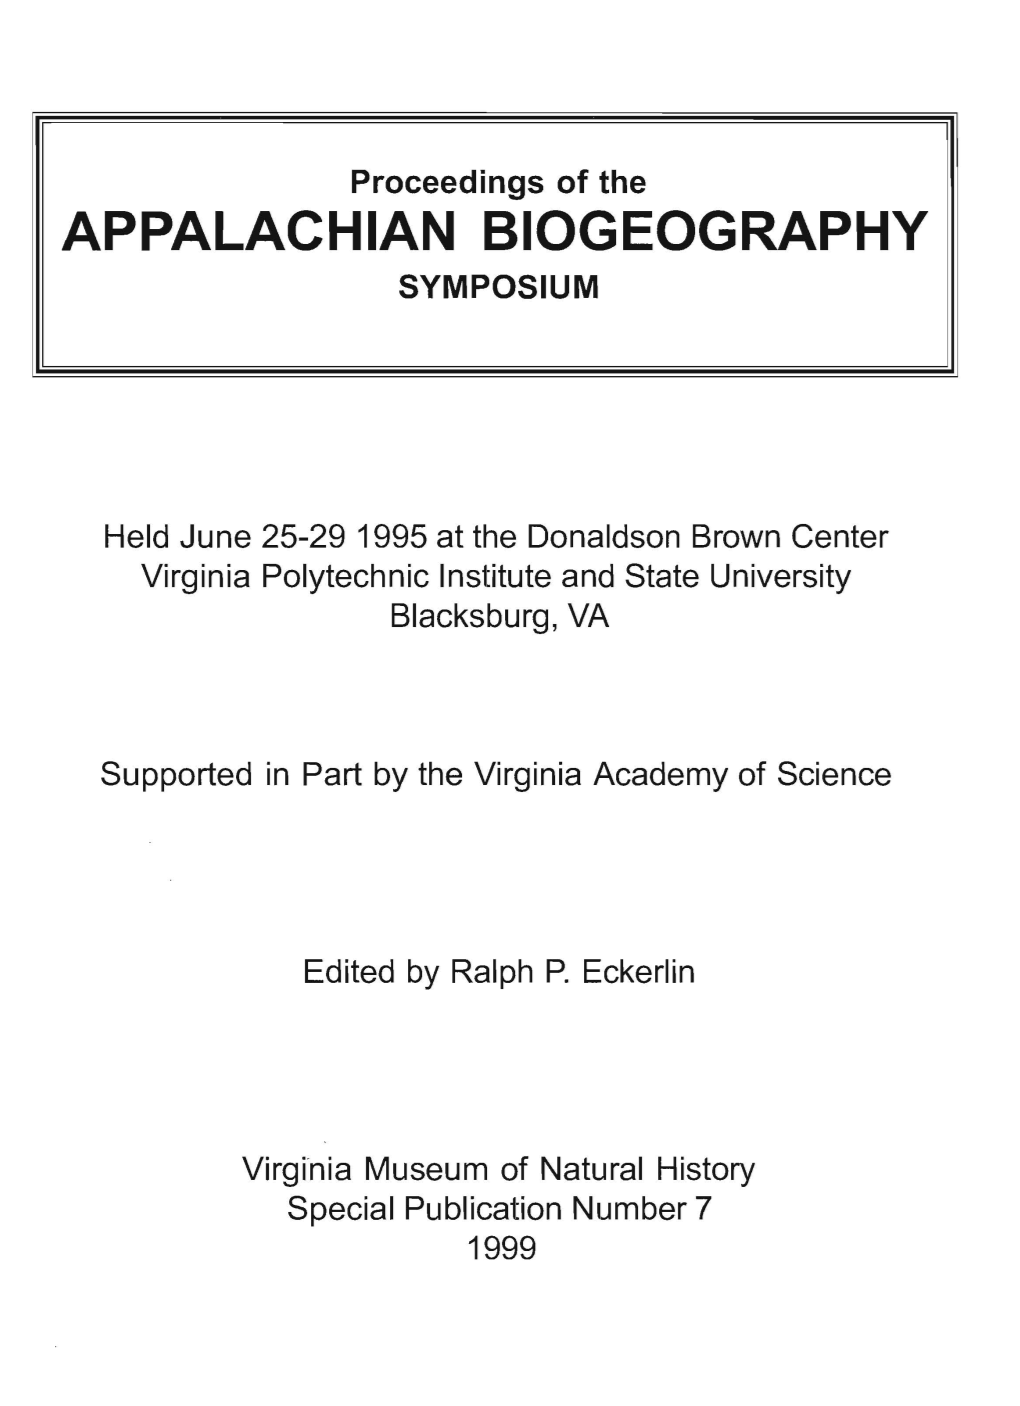 Appalachian Biogeography Symposium